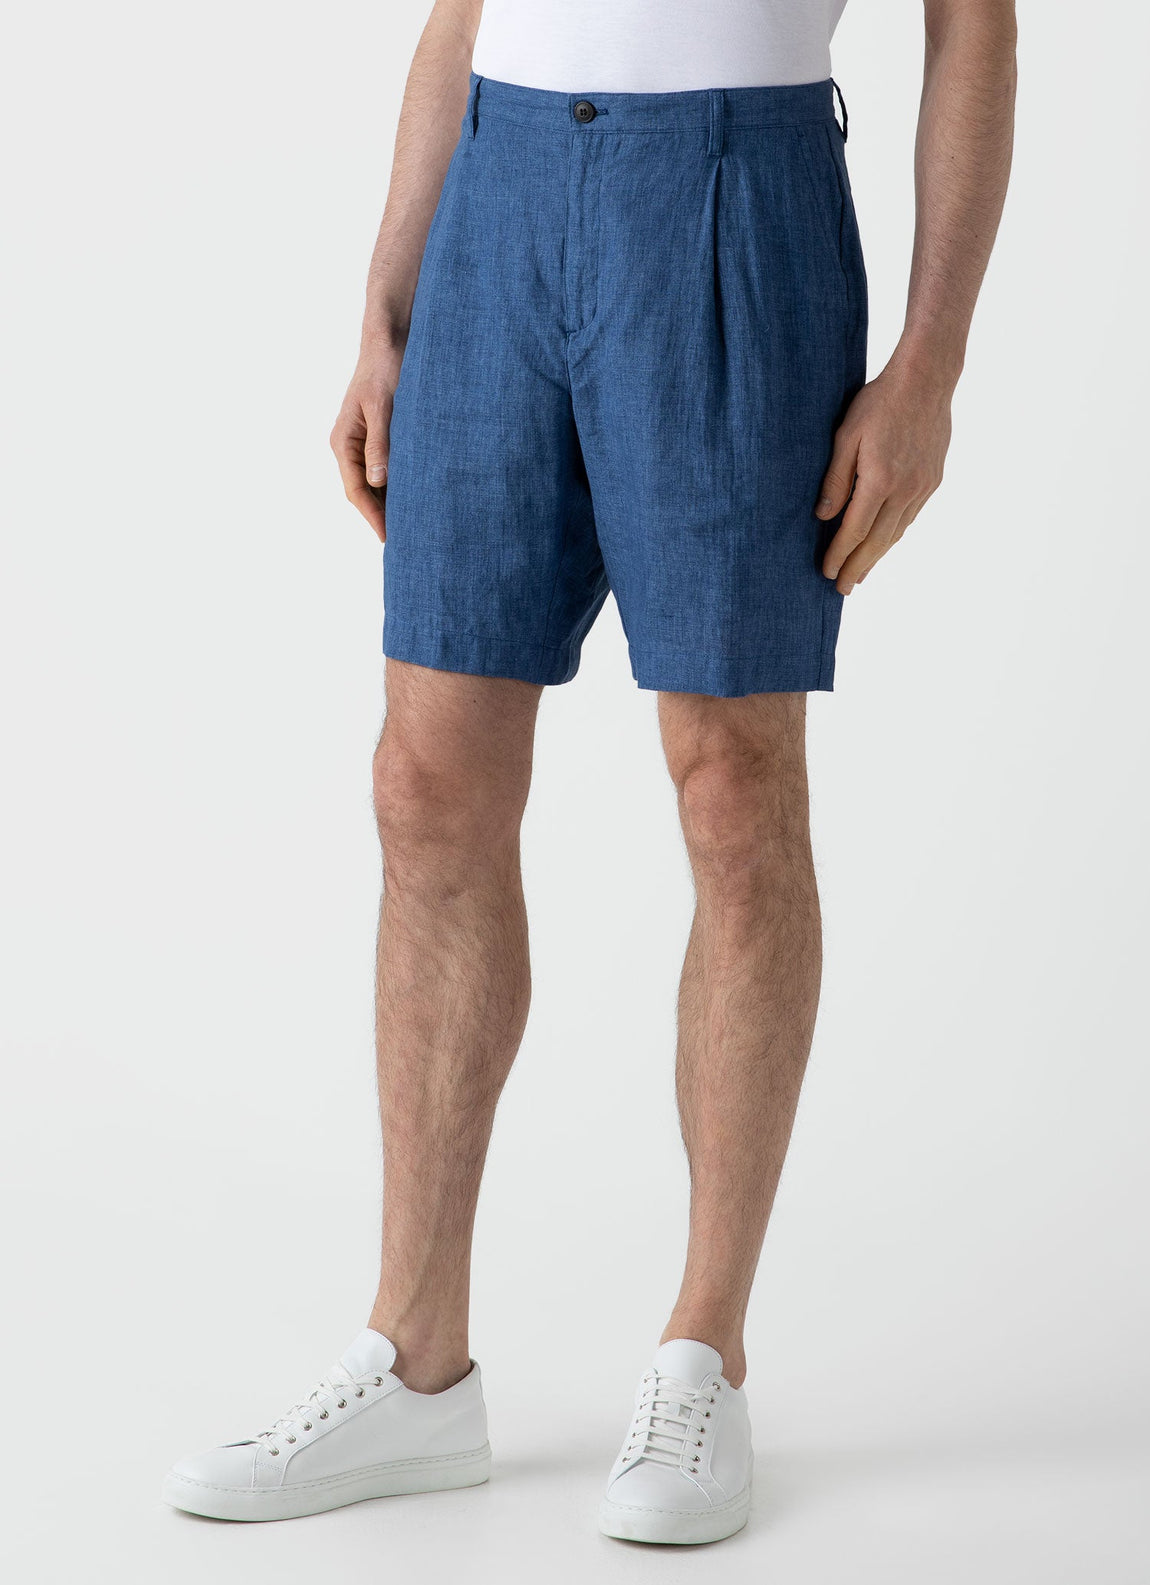 Men's Pleated Linen Short in Blue Melange